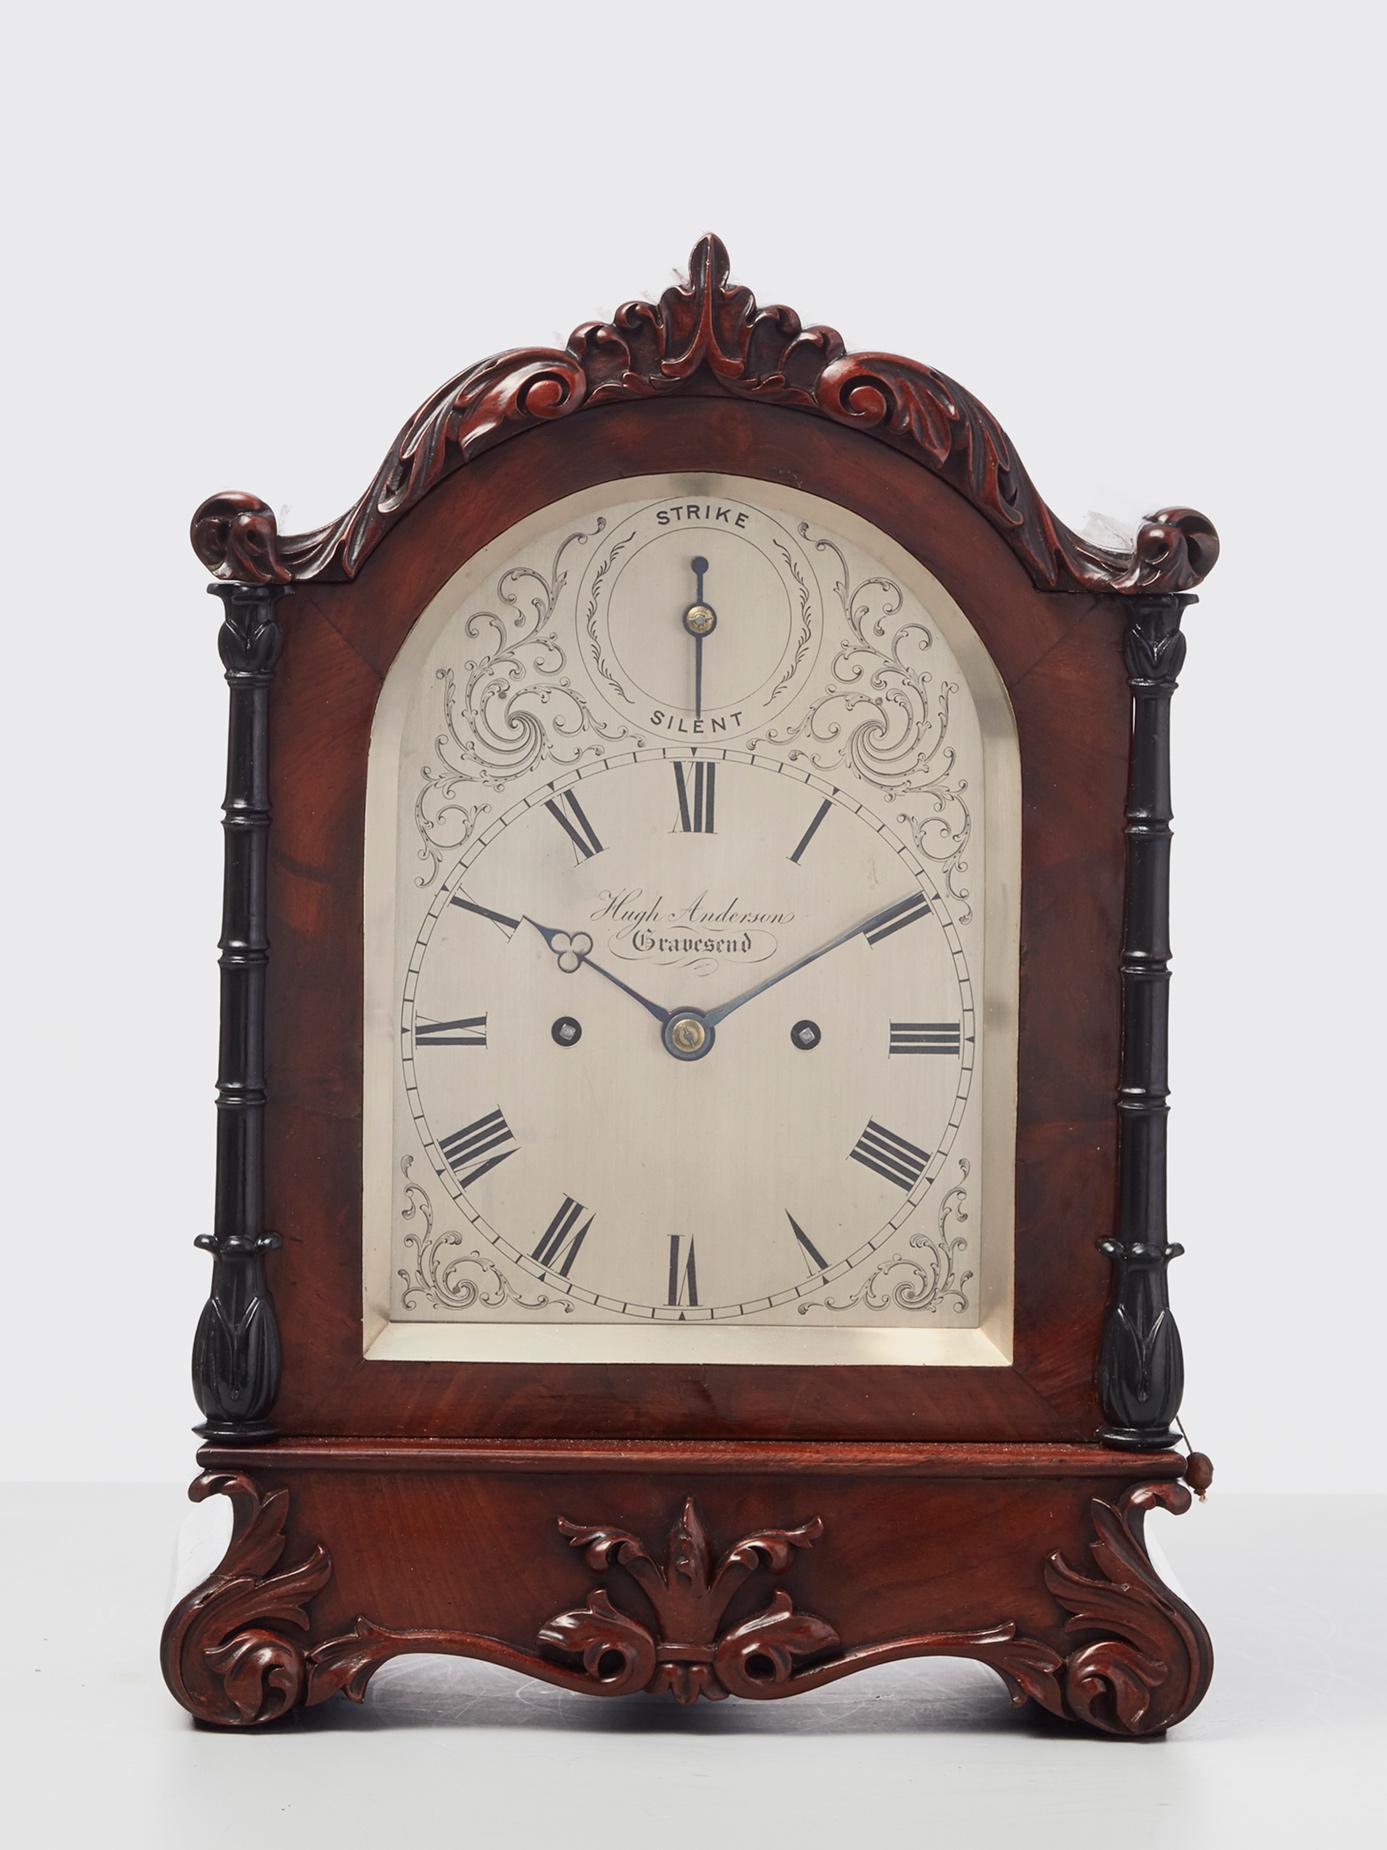 Une belle horloge victorienne à console avec un boîtier en acajou exceptionnellement attrayant, avec de bonnes proportions et de belles sculptures sur bois détaillées, vers 1850.

Le cadran argenté typiquement victorien, finement gravé, avec